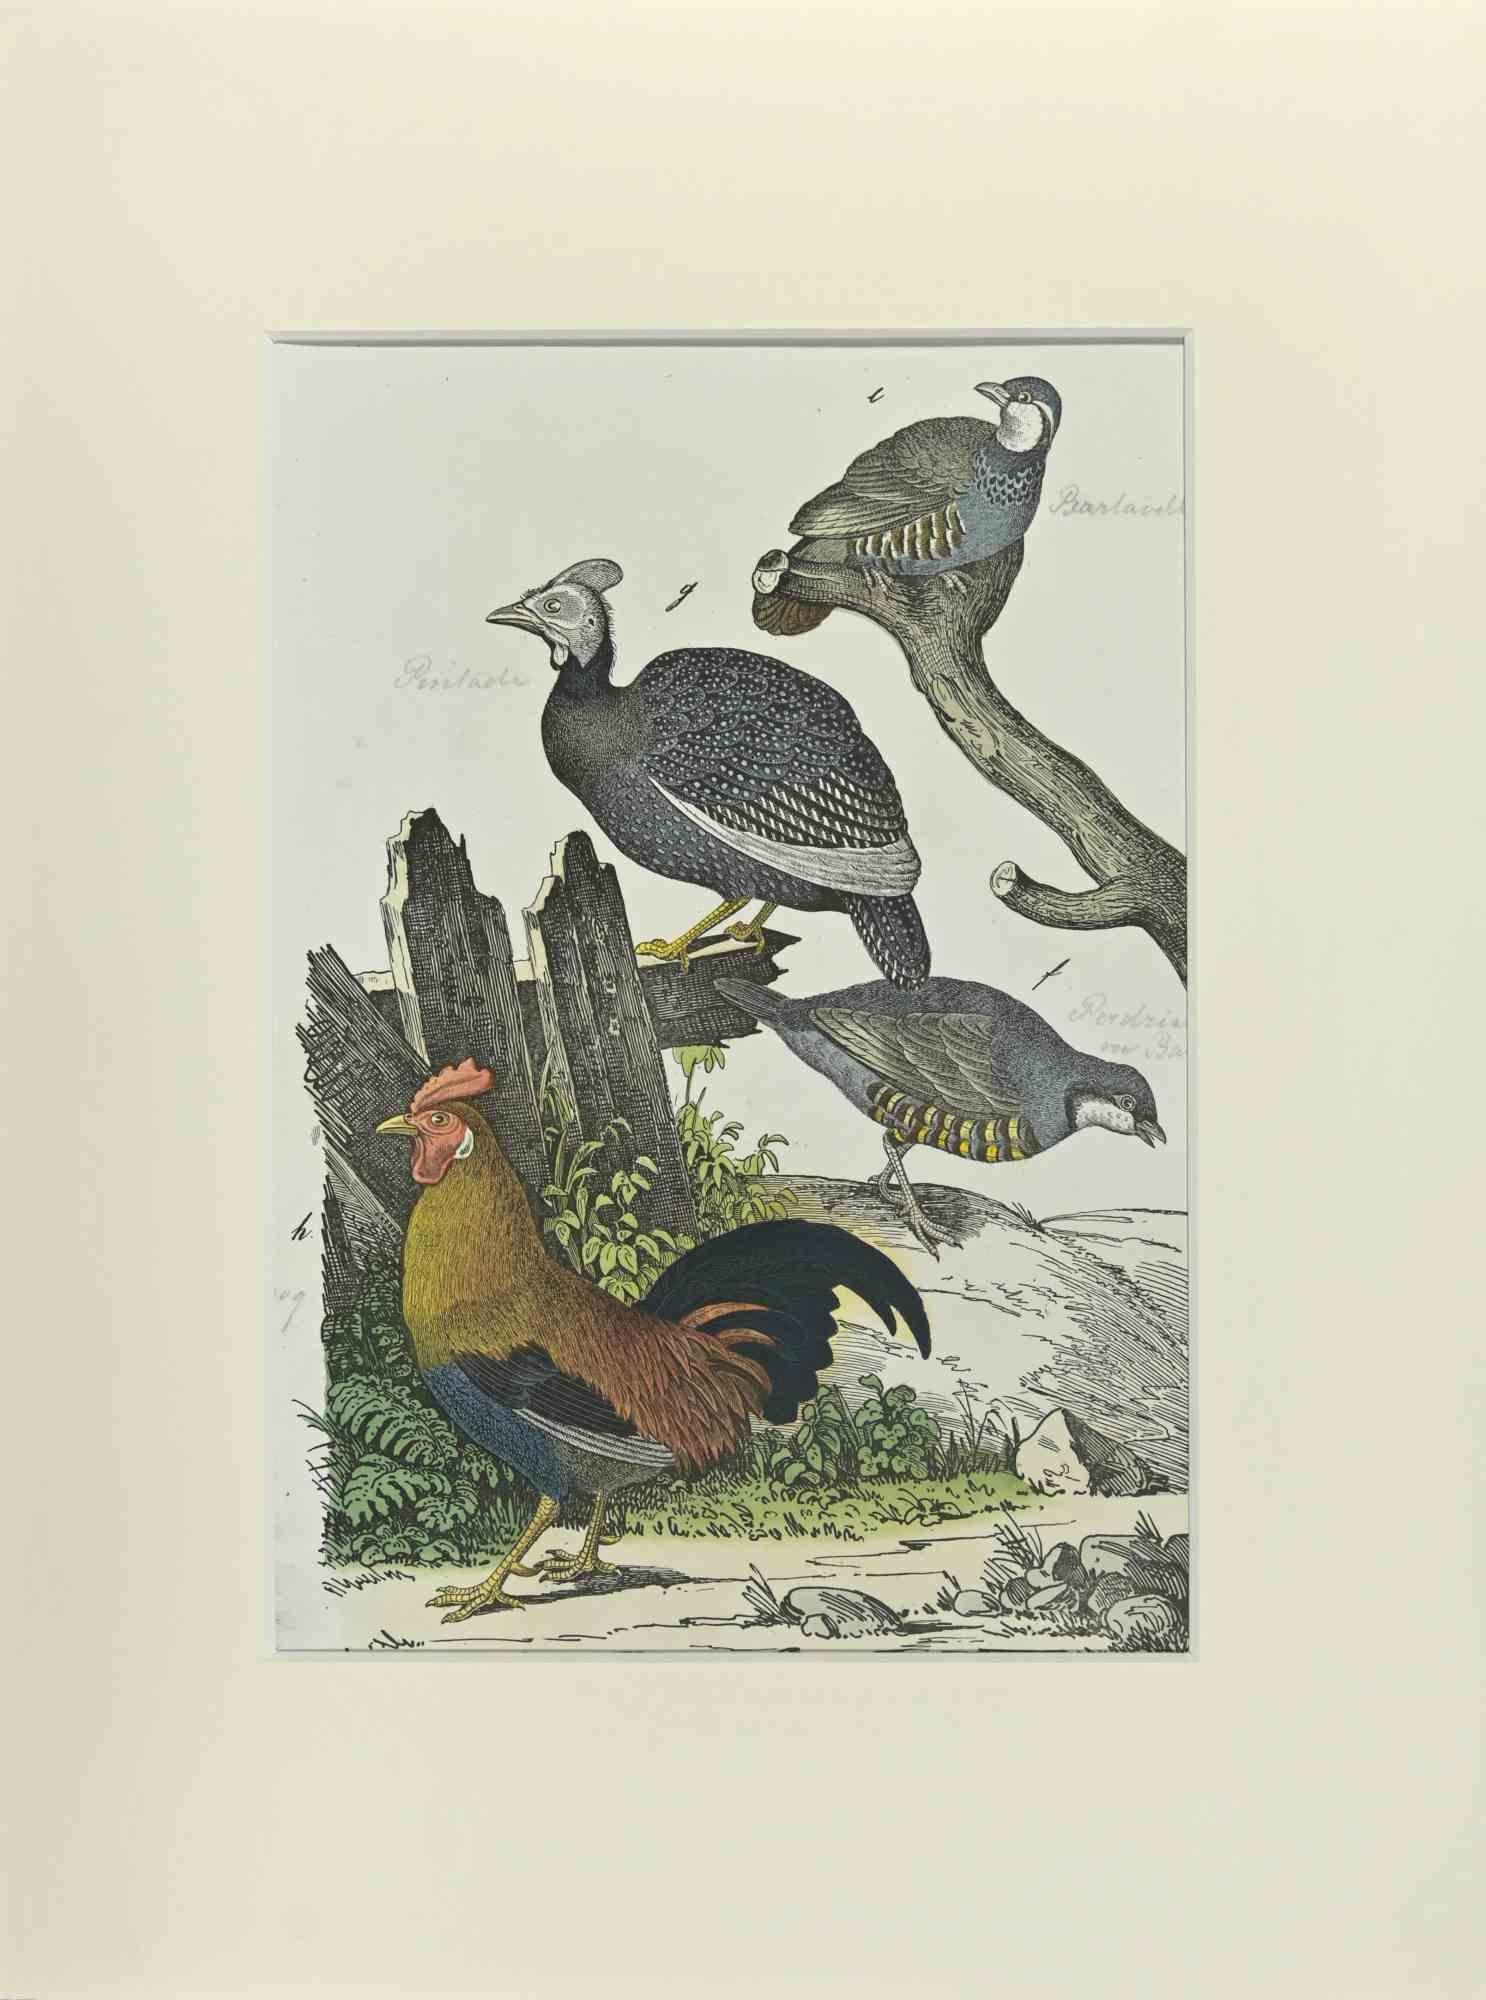 Le coq est une eau-forte colorée à la main réalisée par Gotthilf Heinrich von Schubert - Johann Friedrich Naumann, Illustration de l'Histoire naturelle des oiseaux en images, publiée par Stuttgart et Esslingen, Schreiber et Schill 1840 ca. 

Johann